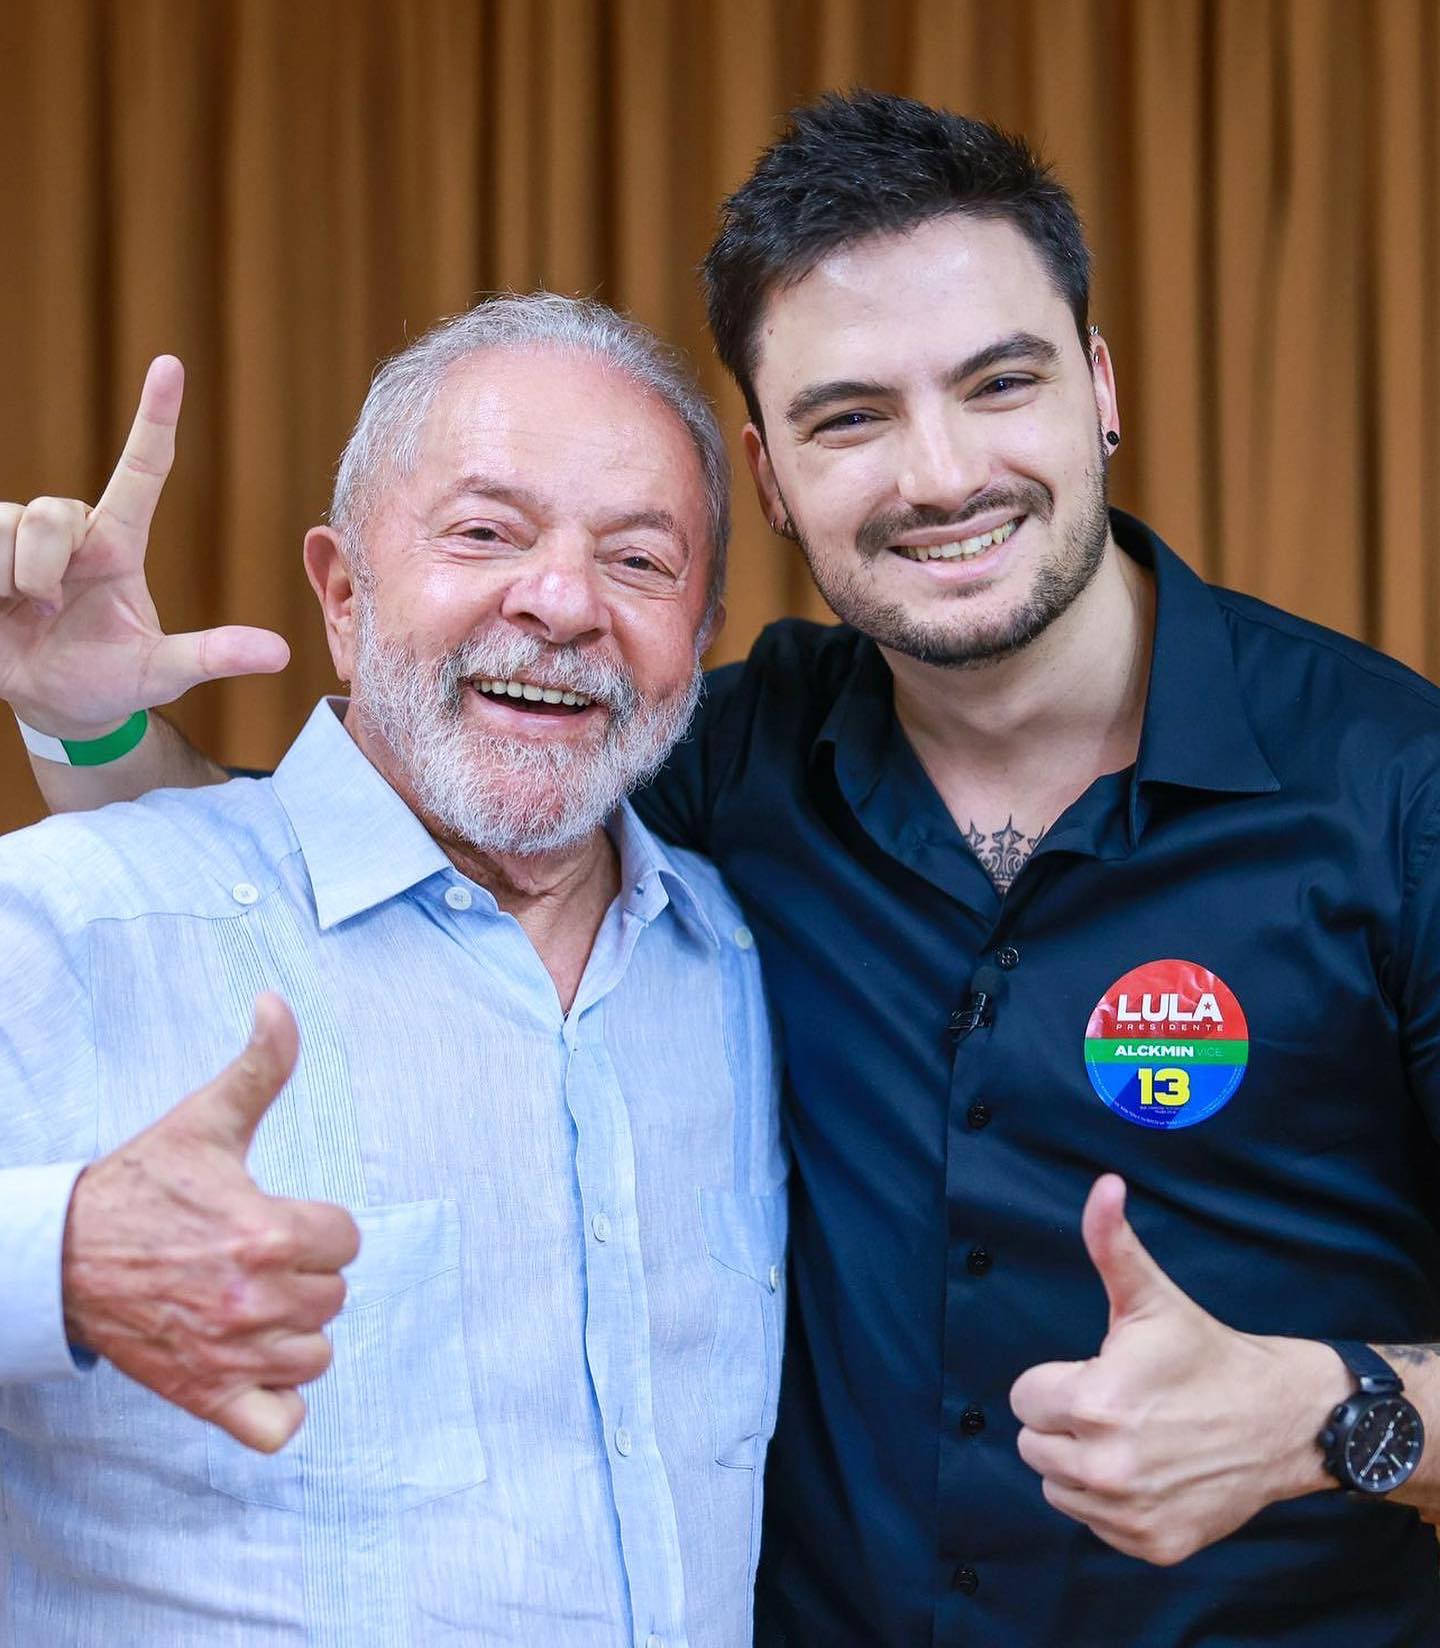 Felipe Neto And President Lula Background